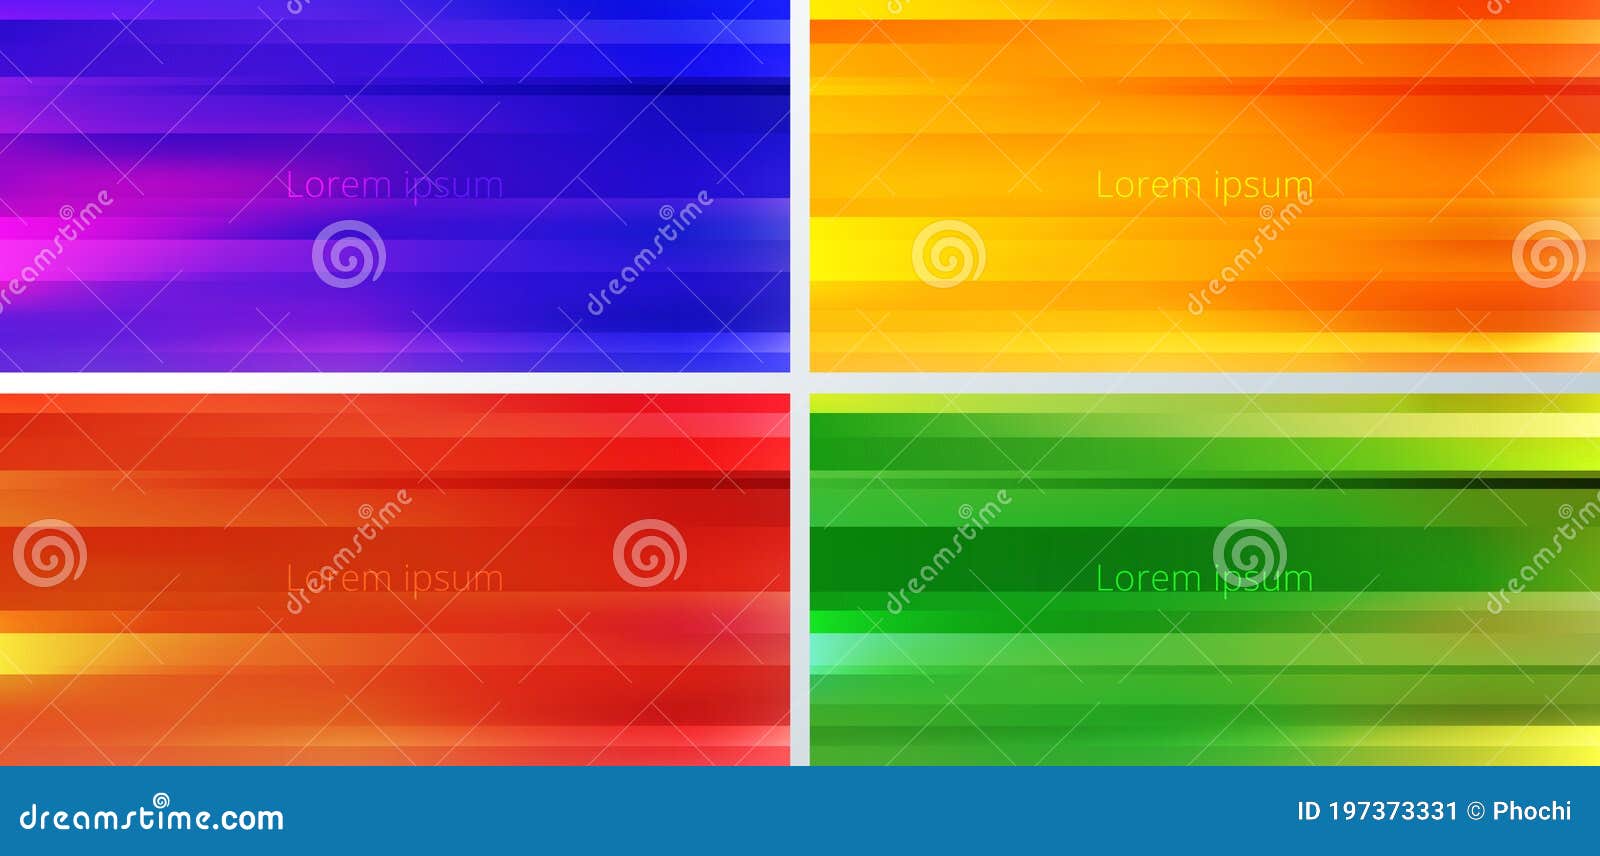 Abstract gradient colors: Với yếu tố nghệ thuật cao, abstract gradient colors đã trở thành xu hướng được ưa chuộng trong thiết kế đồ hoạ hiện đại. Khám phá hình ảnh này để cảm nhận sự hoành tráng và độc đáo của abstract gradient colors.